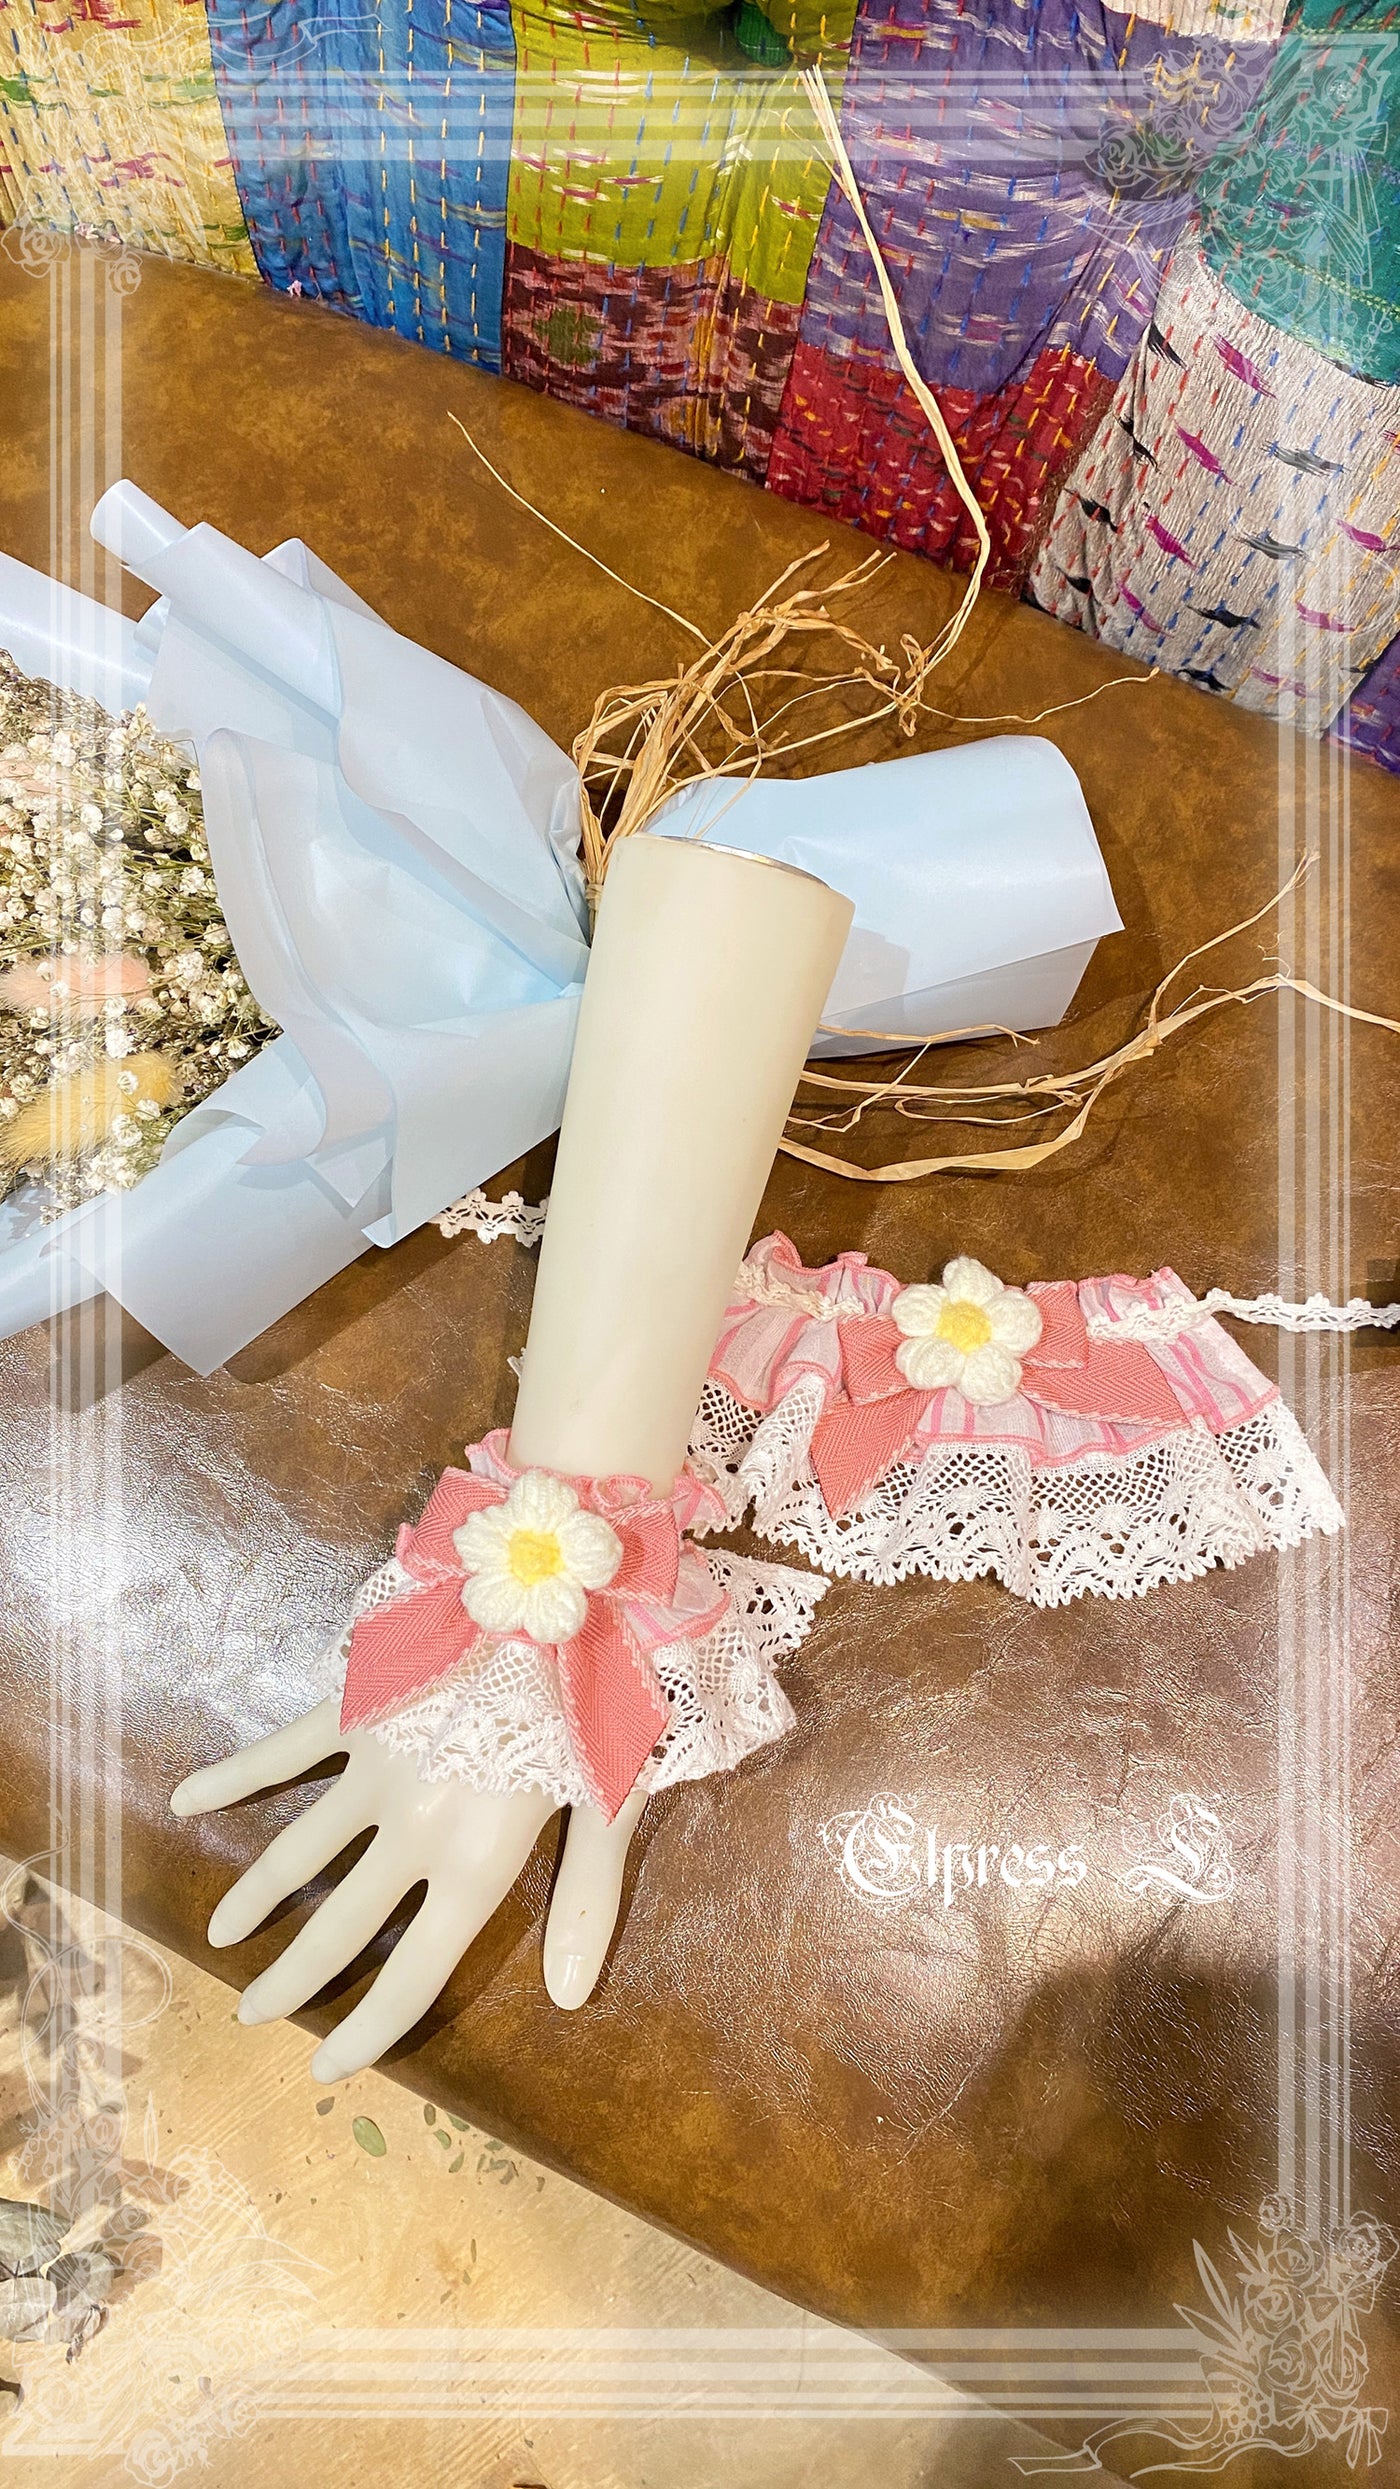 Elpress L~Strawberry Rabbit Lolita BNT Cuffs Choker pink cuffs 